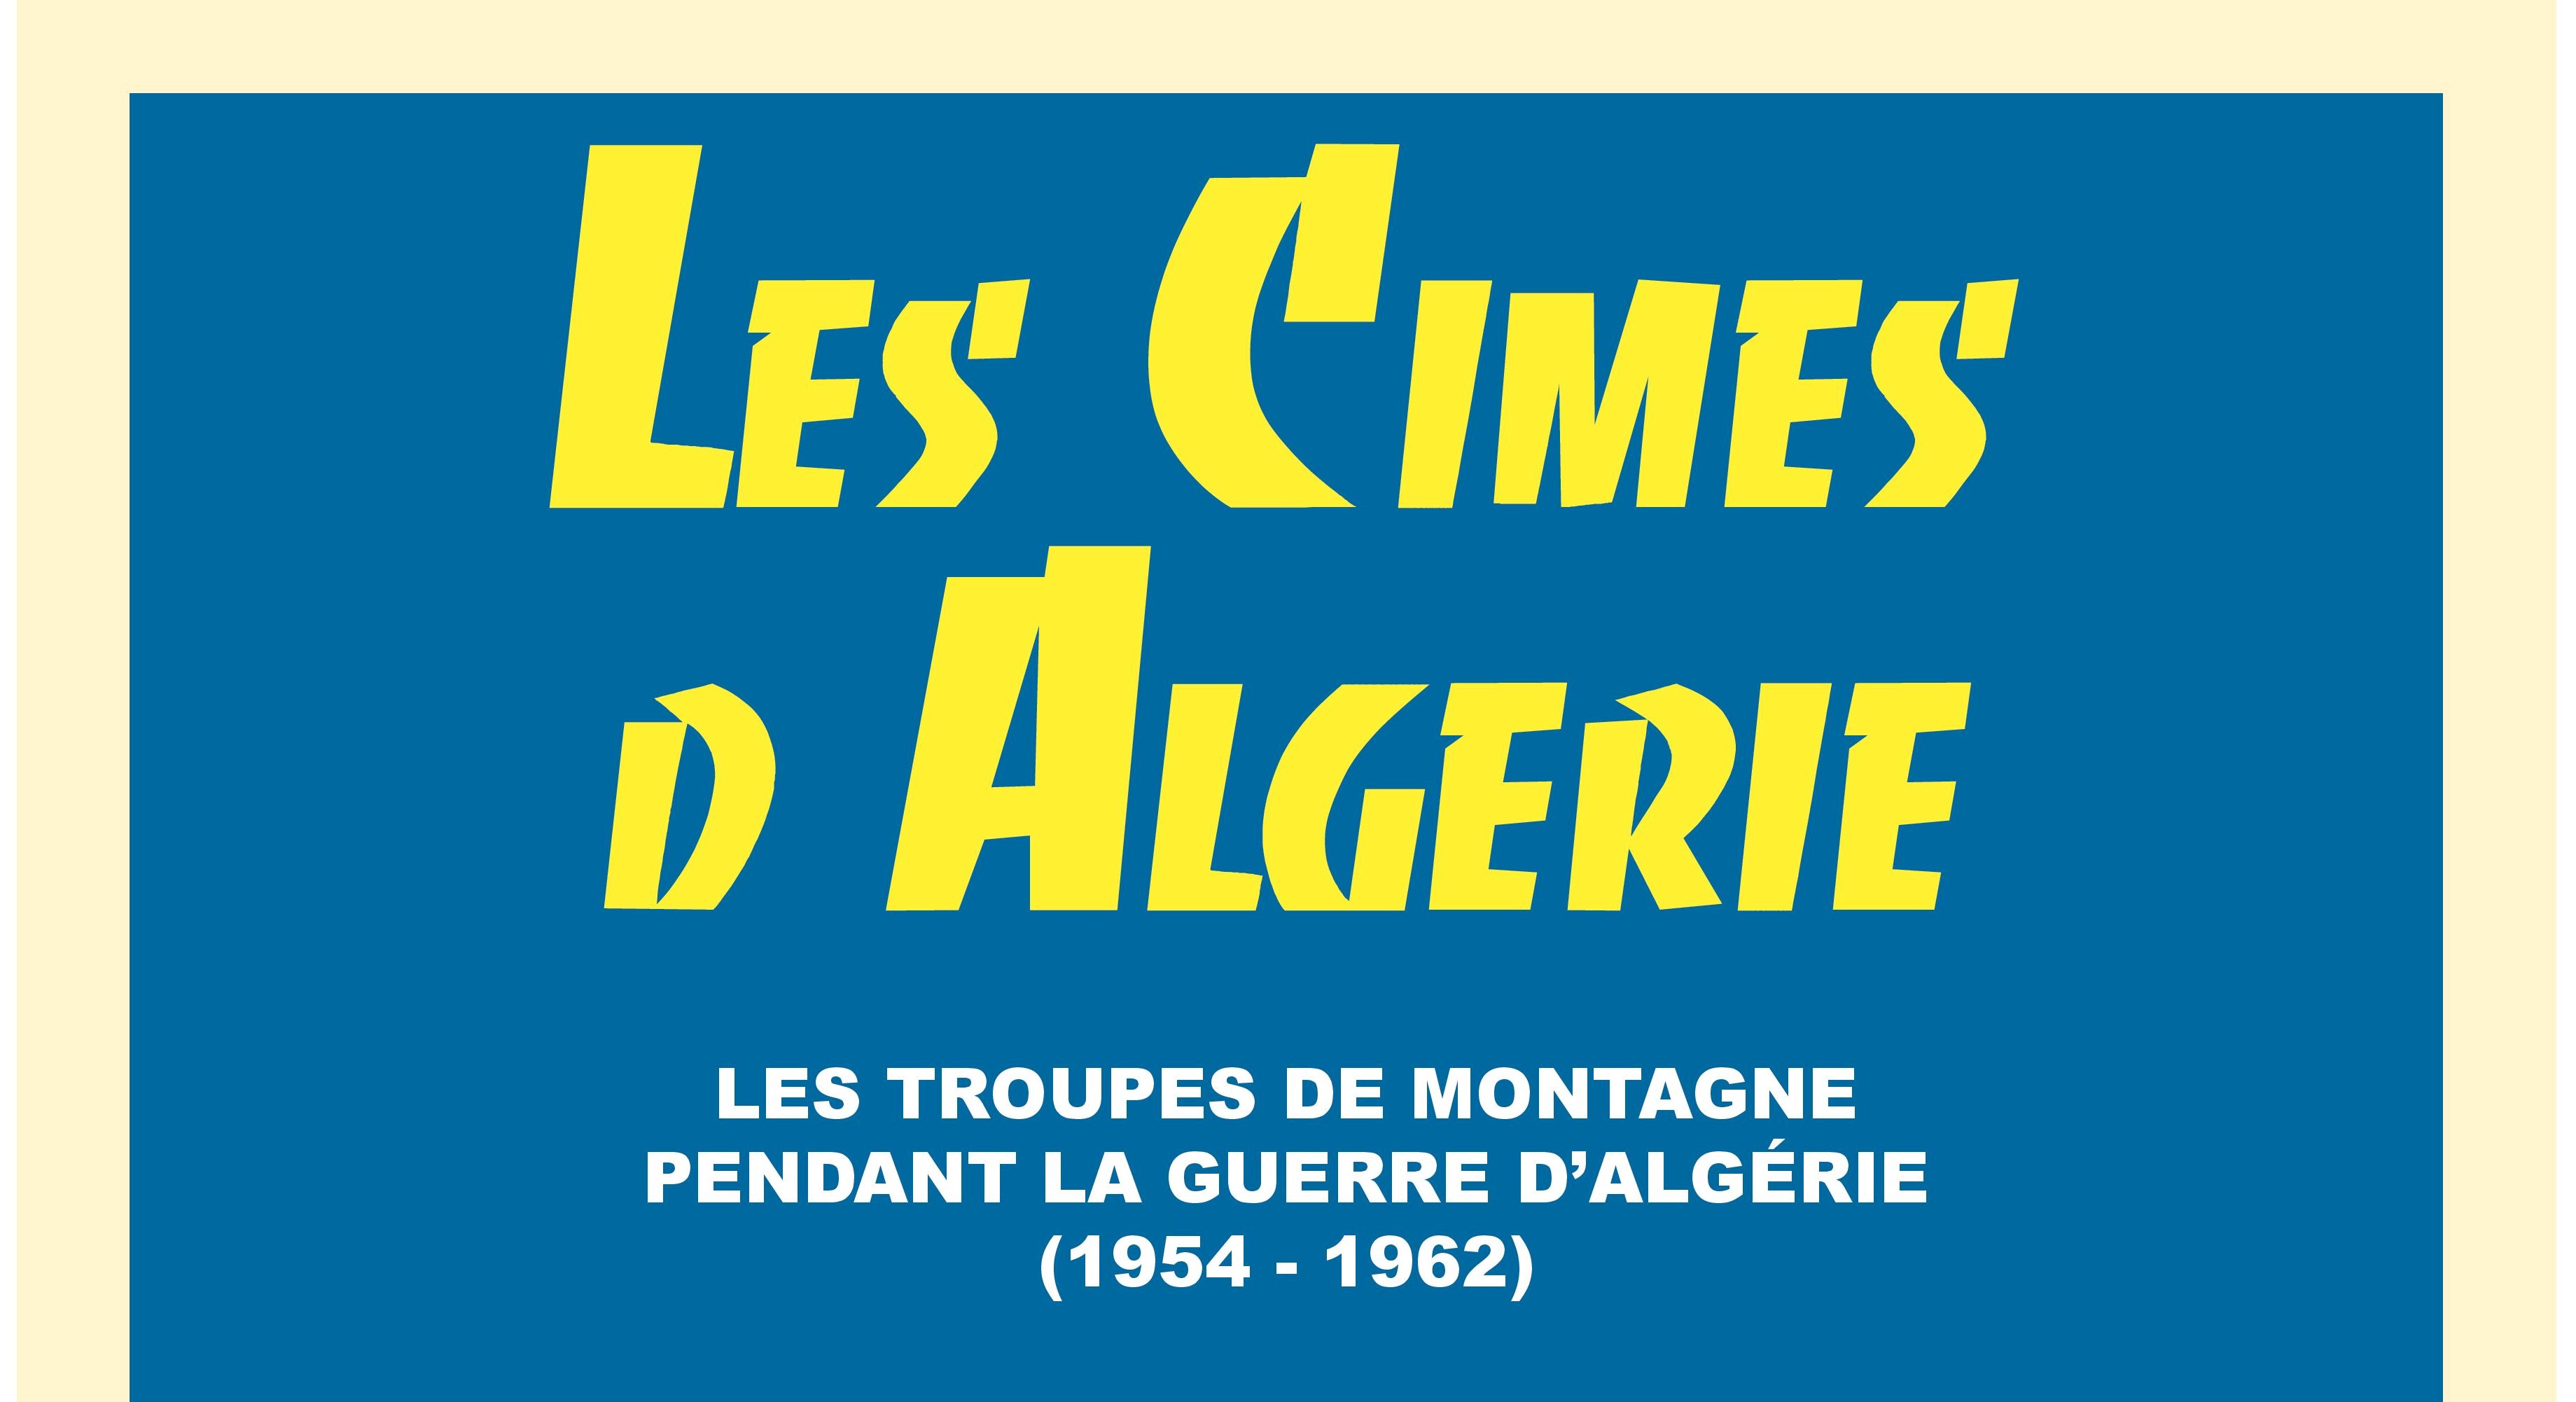 Les cimes d'Algérie